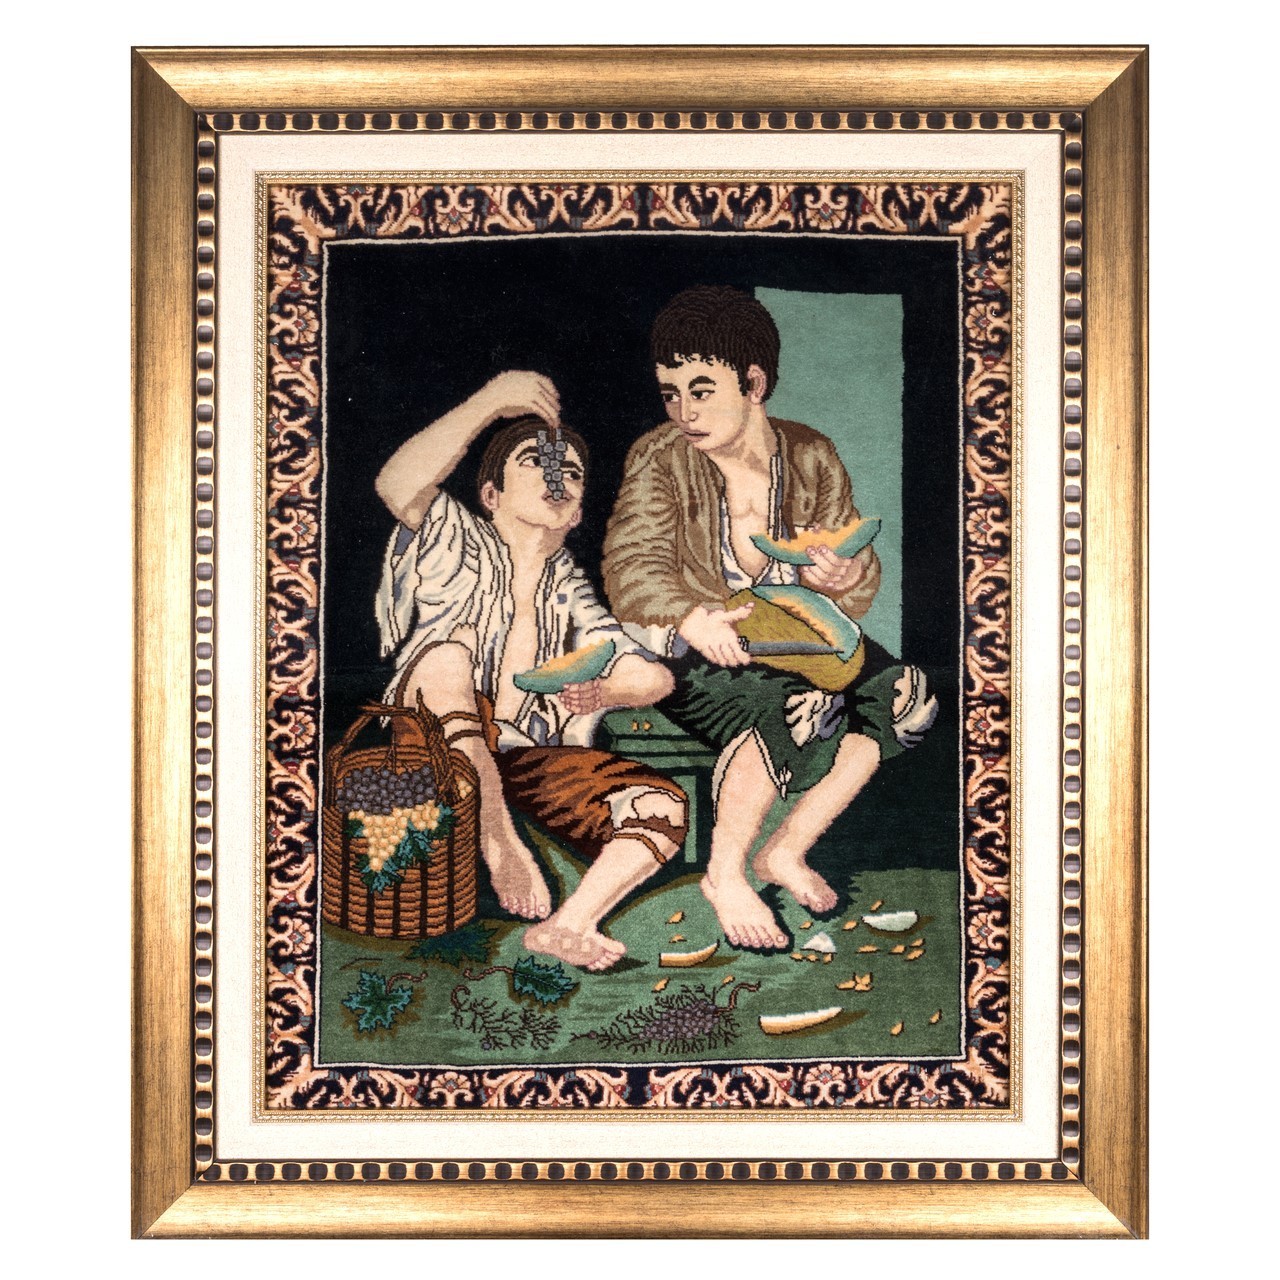 تابلو فرش دستباف طرح دو پسر بچه کد 901199